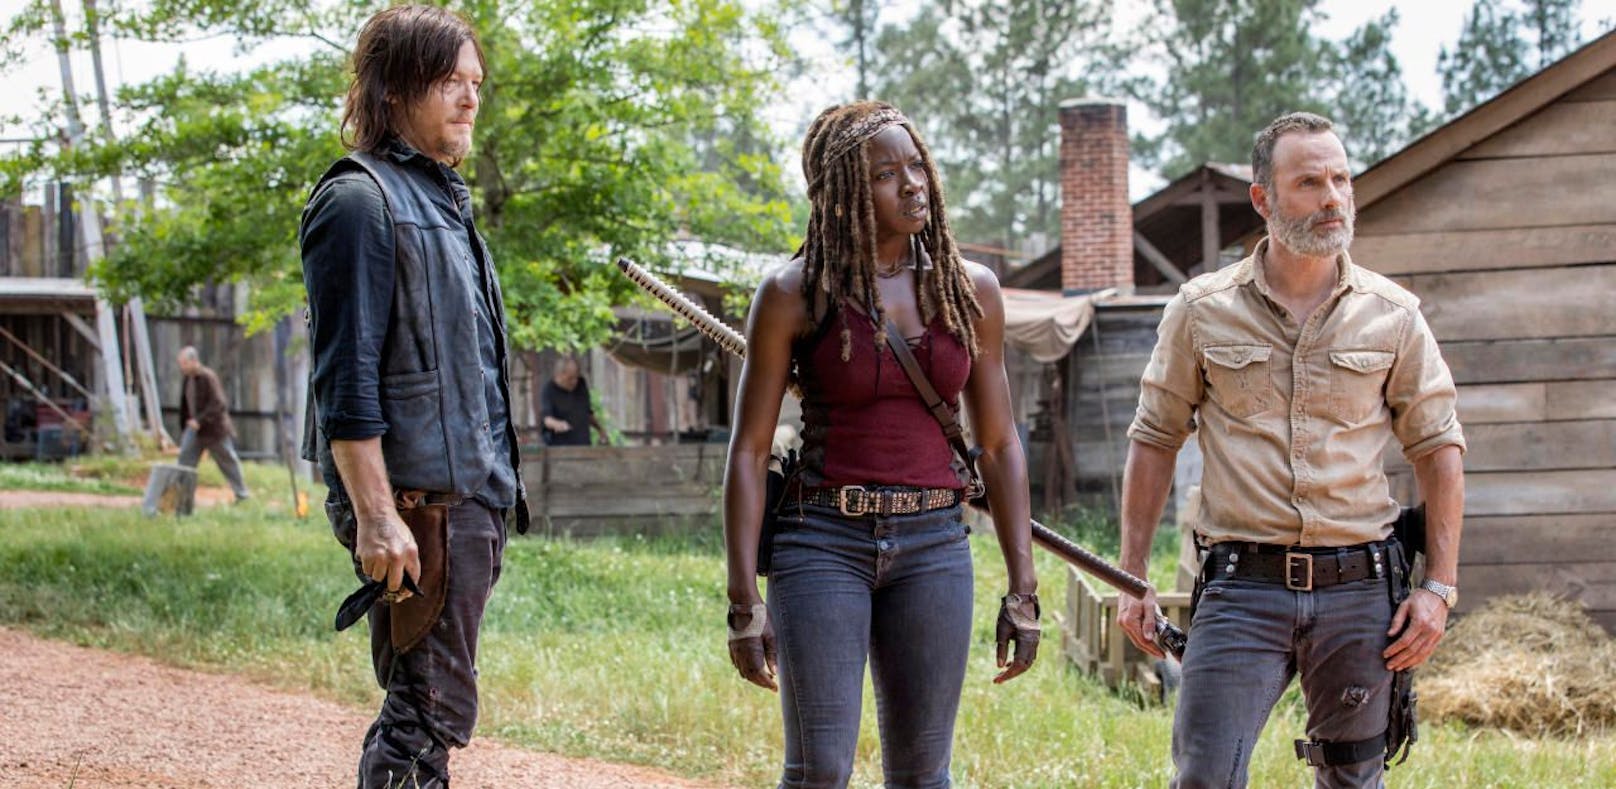 Sky zeigt neue "Walking Dead"-Folge im Kino